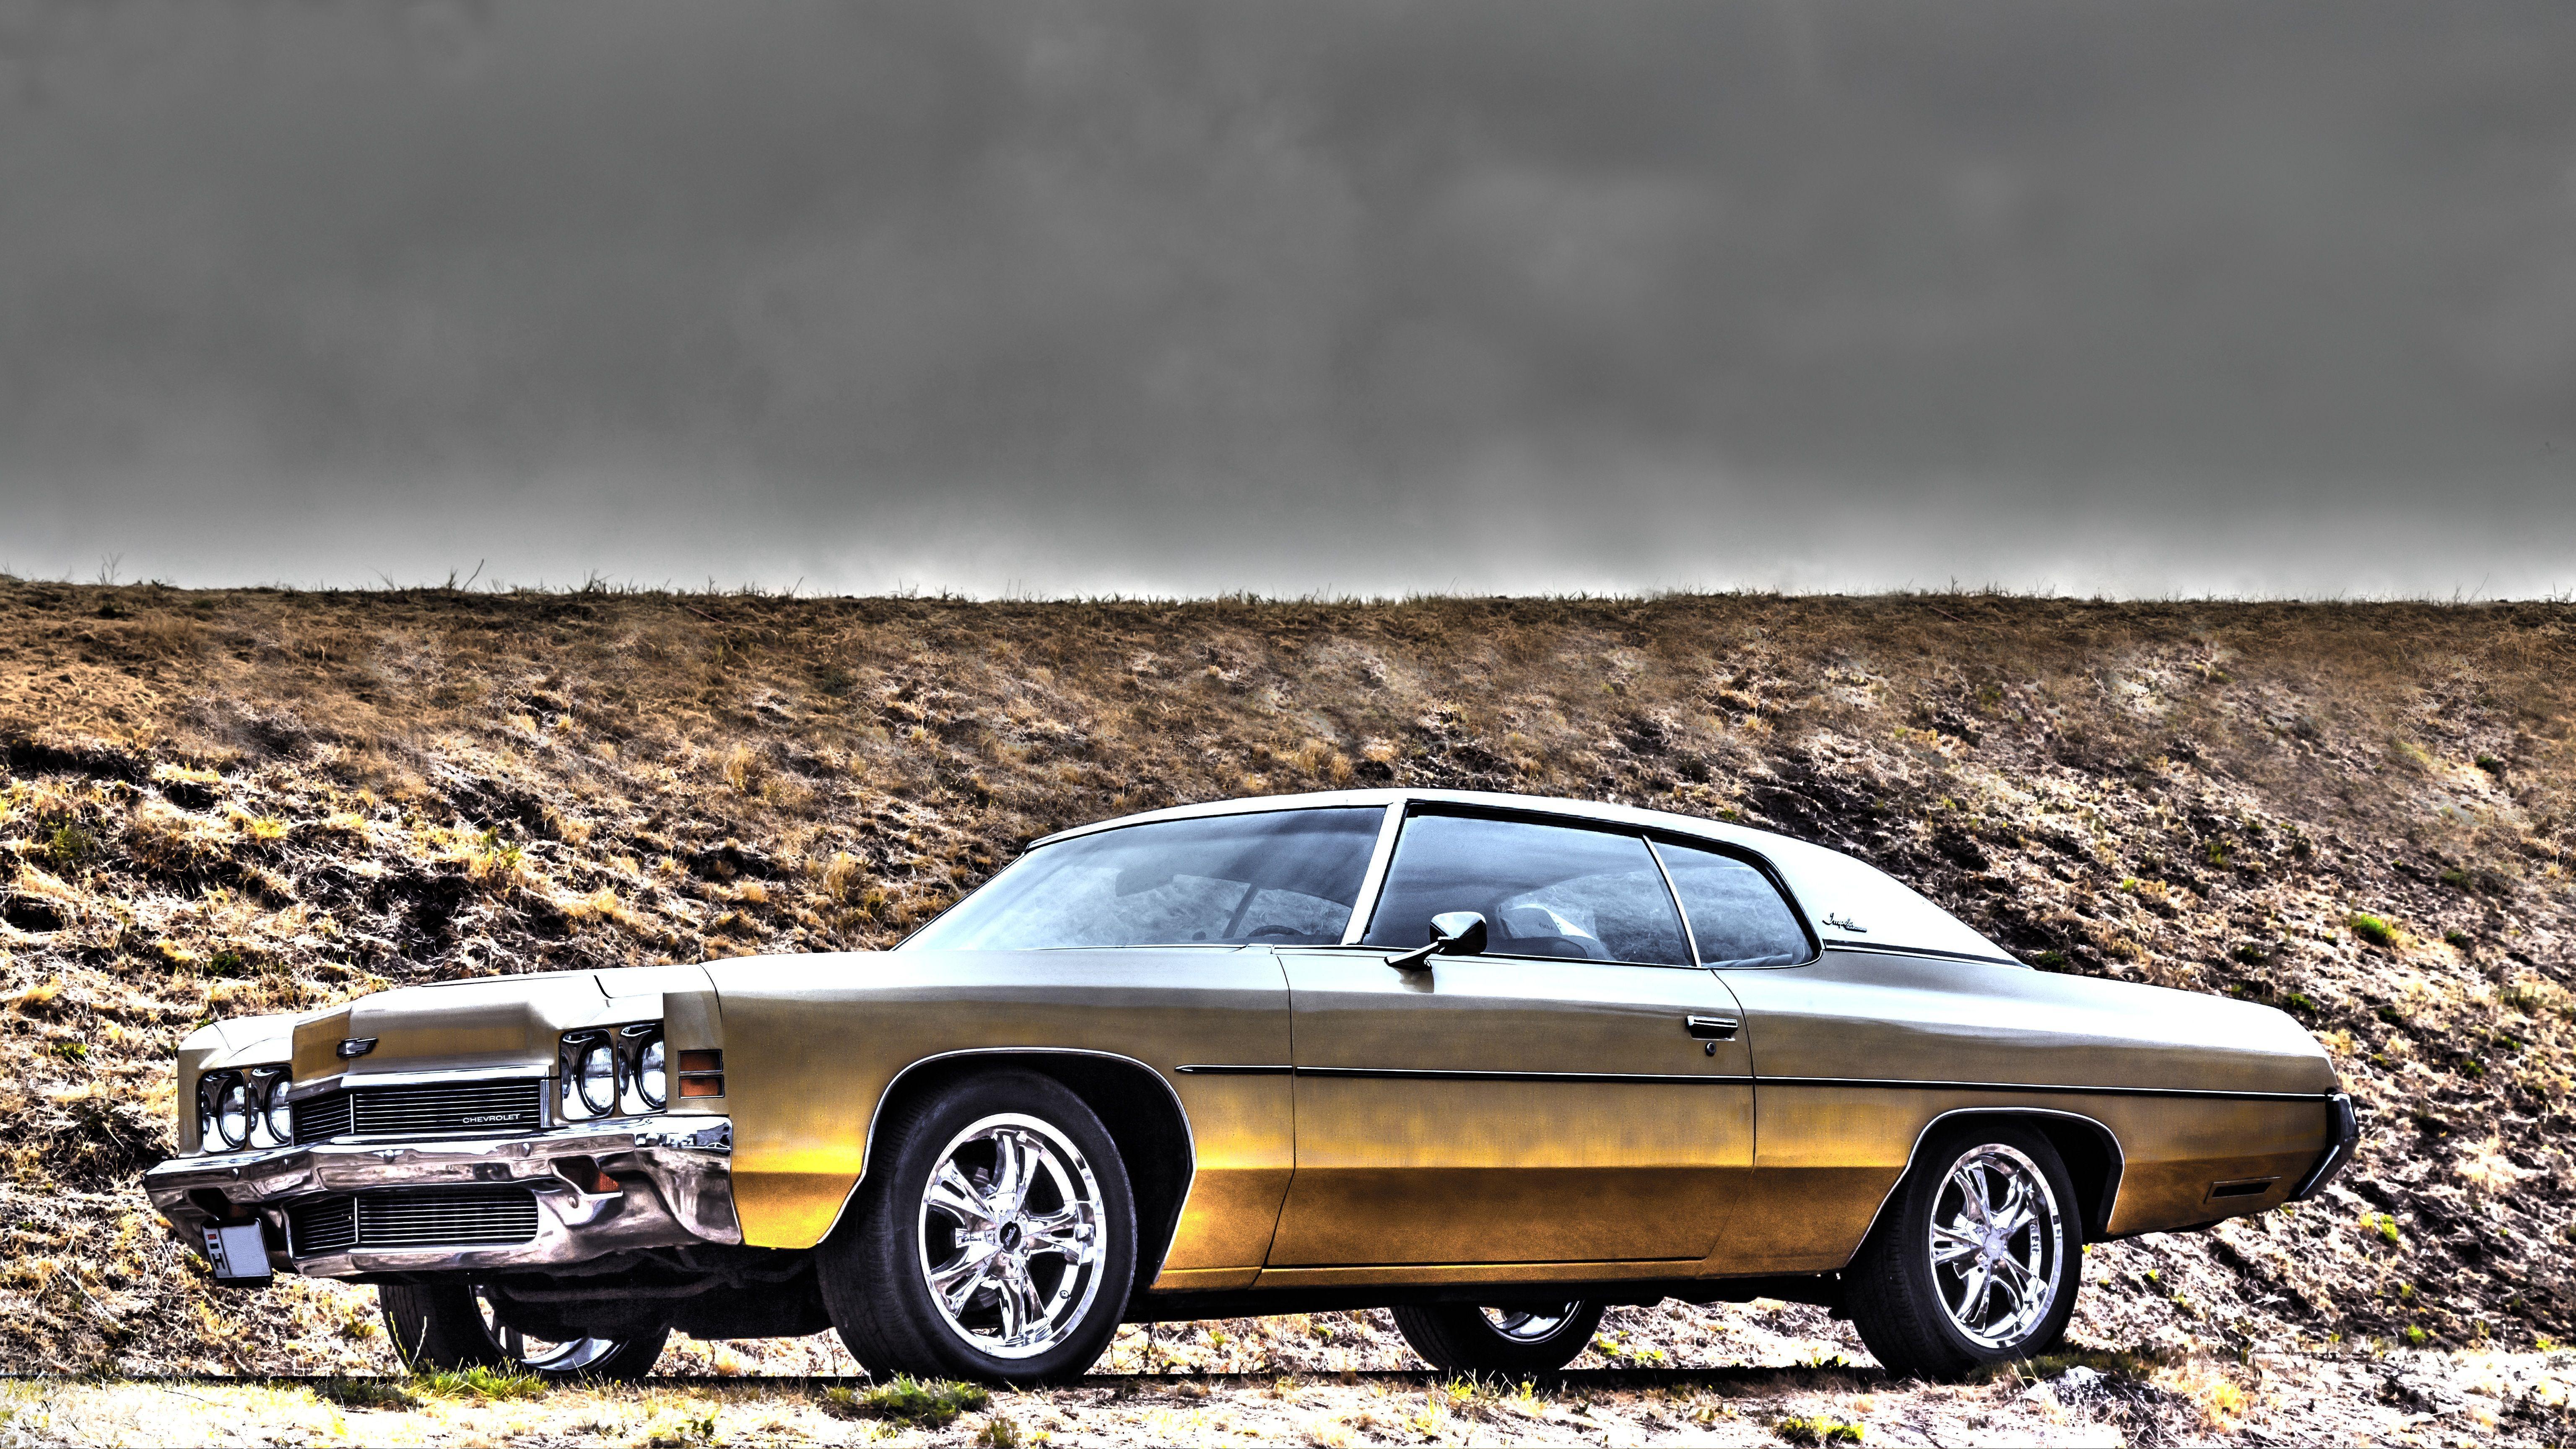 شورلت (Chevrolet impala)